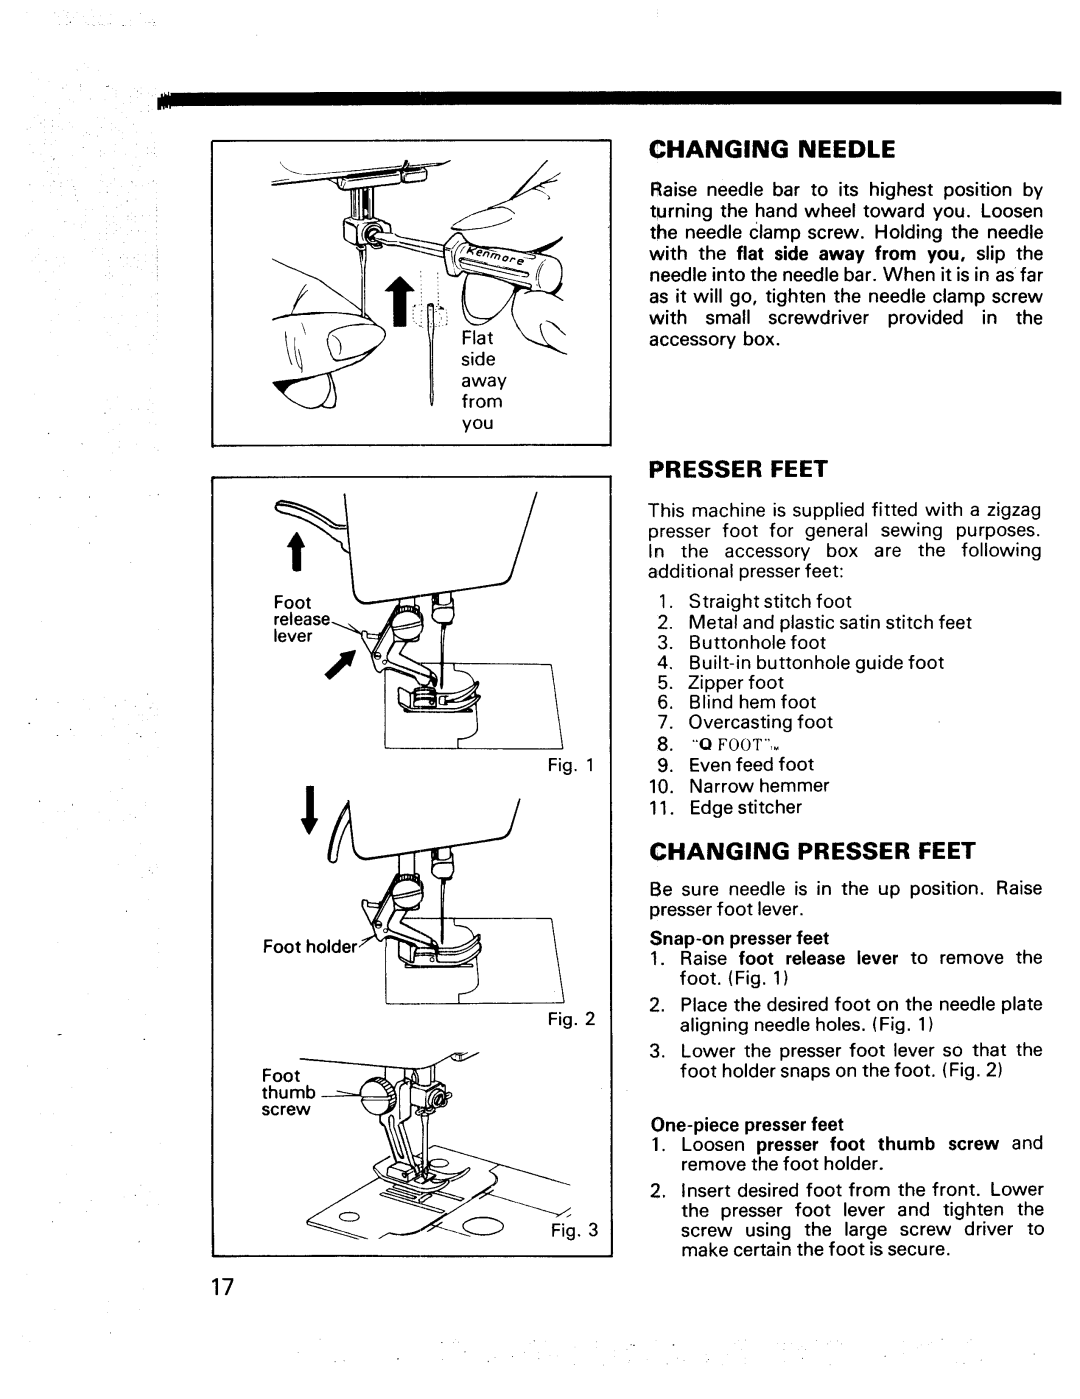 Kenmore 17920, 17922 manual Changing Needle, Changing Presser Feet 